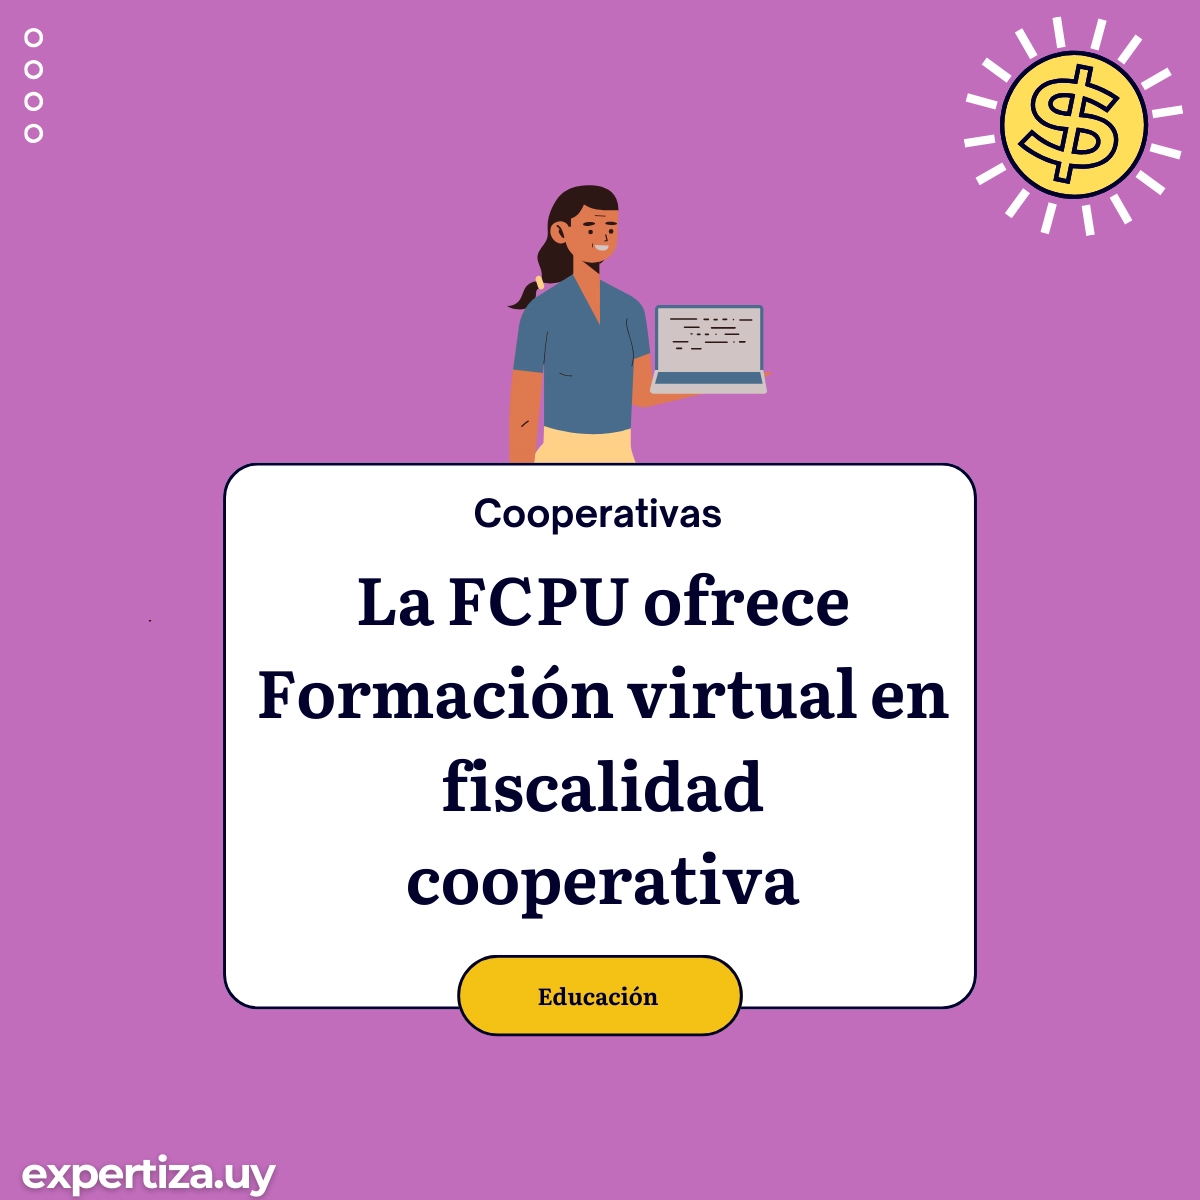 La FCPU ofrece Formación virtual en fiscalidad cooperativa.